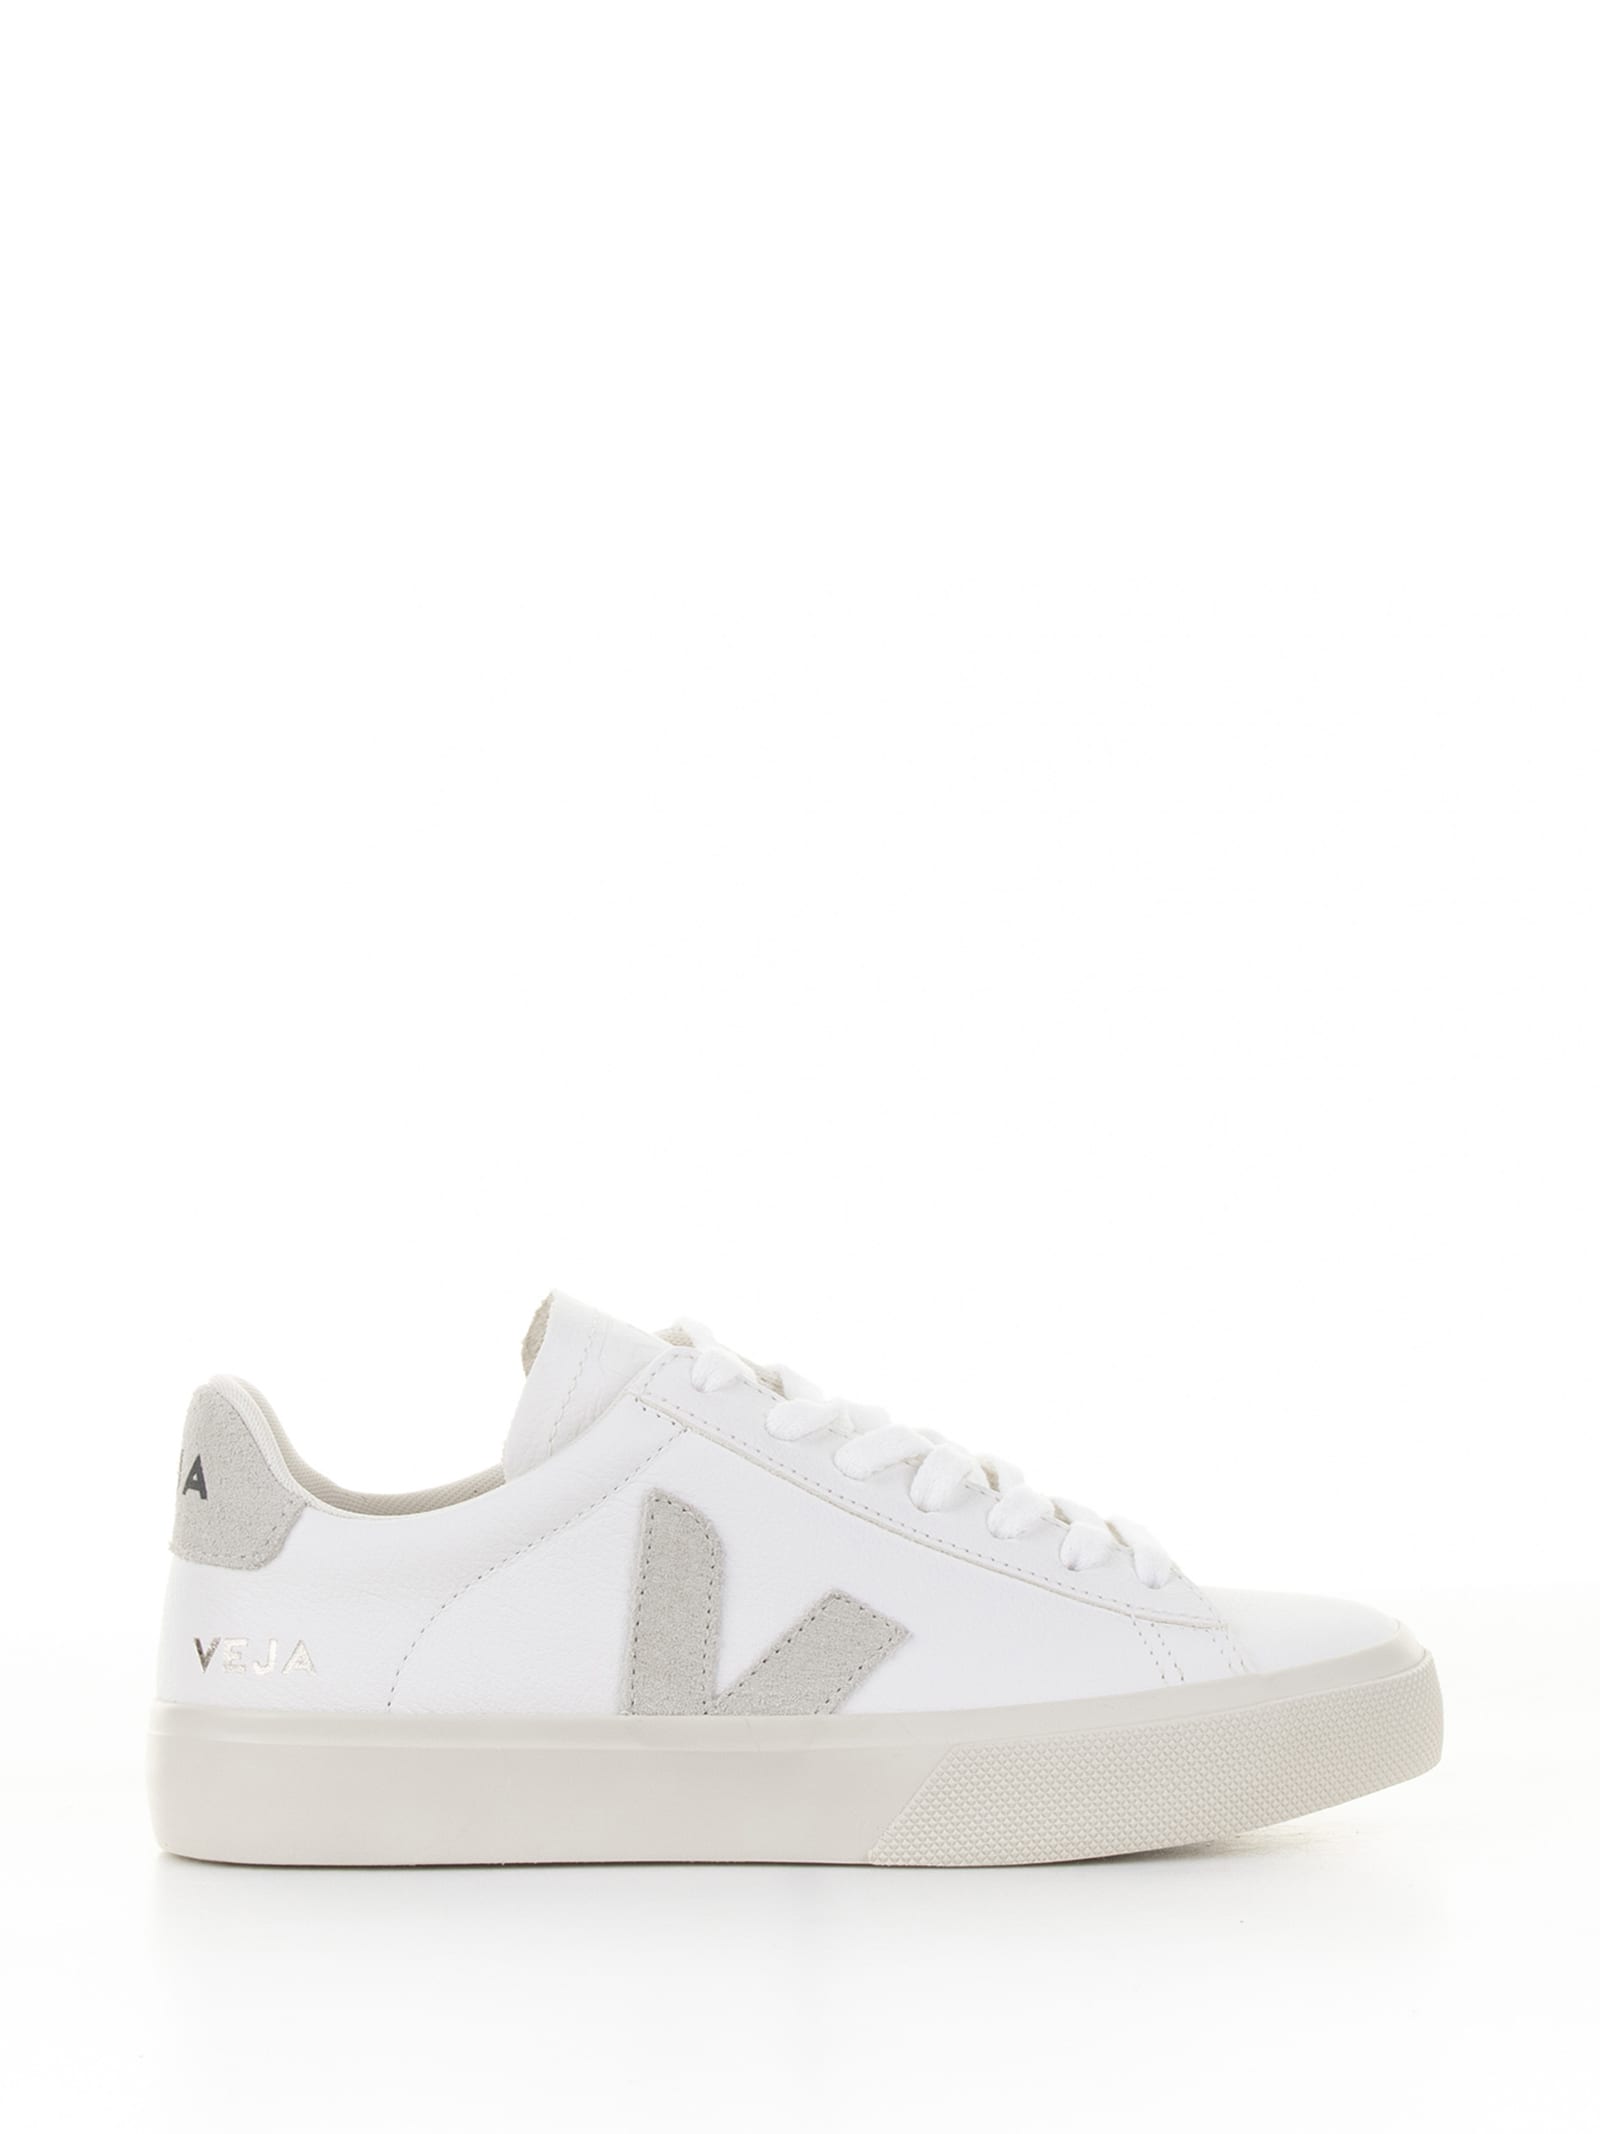 Veja Campo Sneaker In White Gray Leather For Men